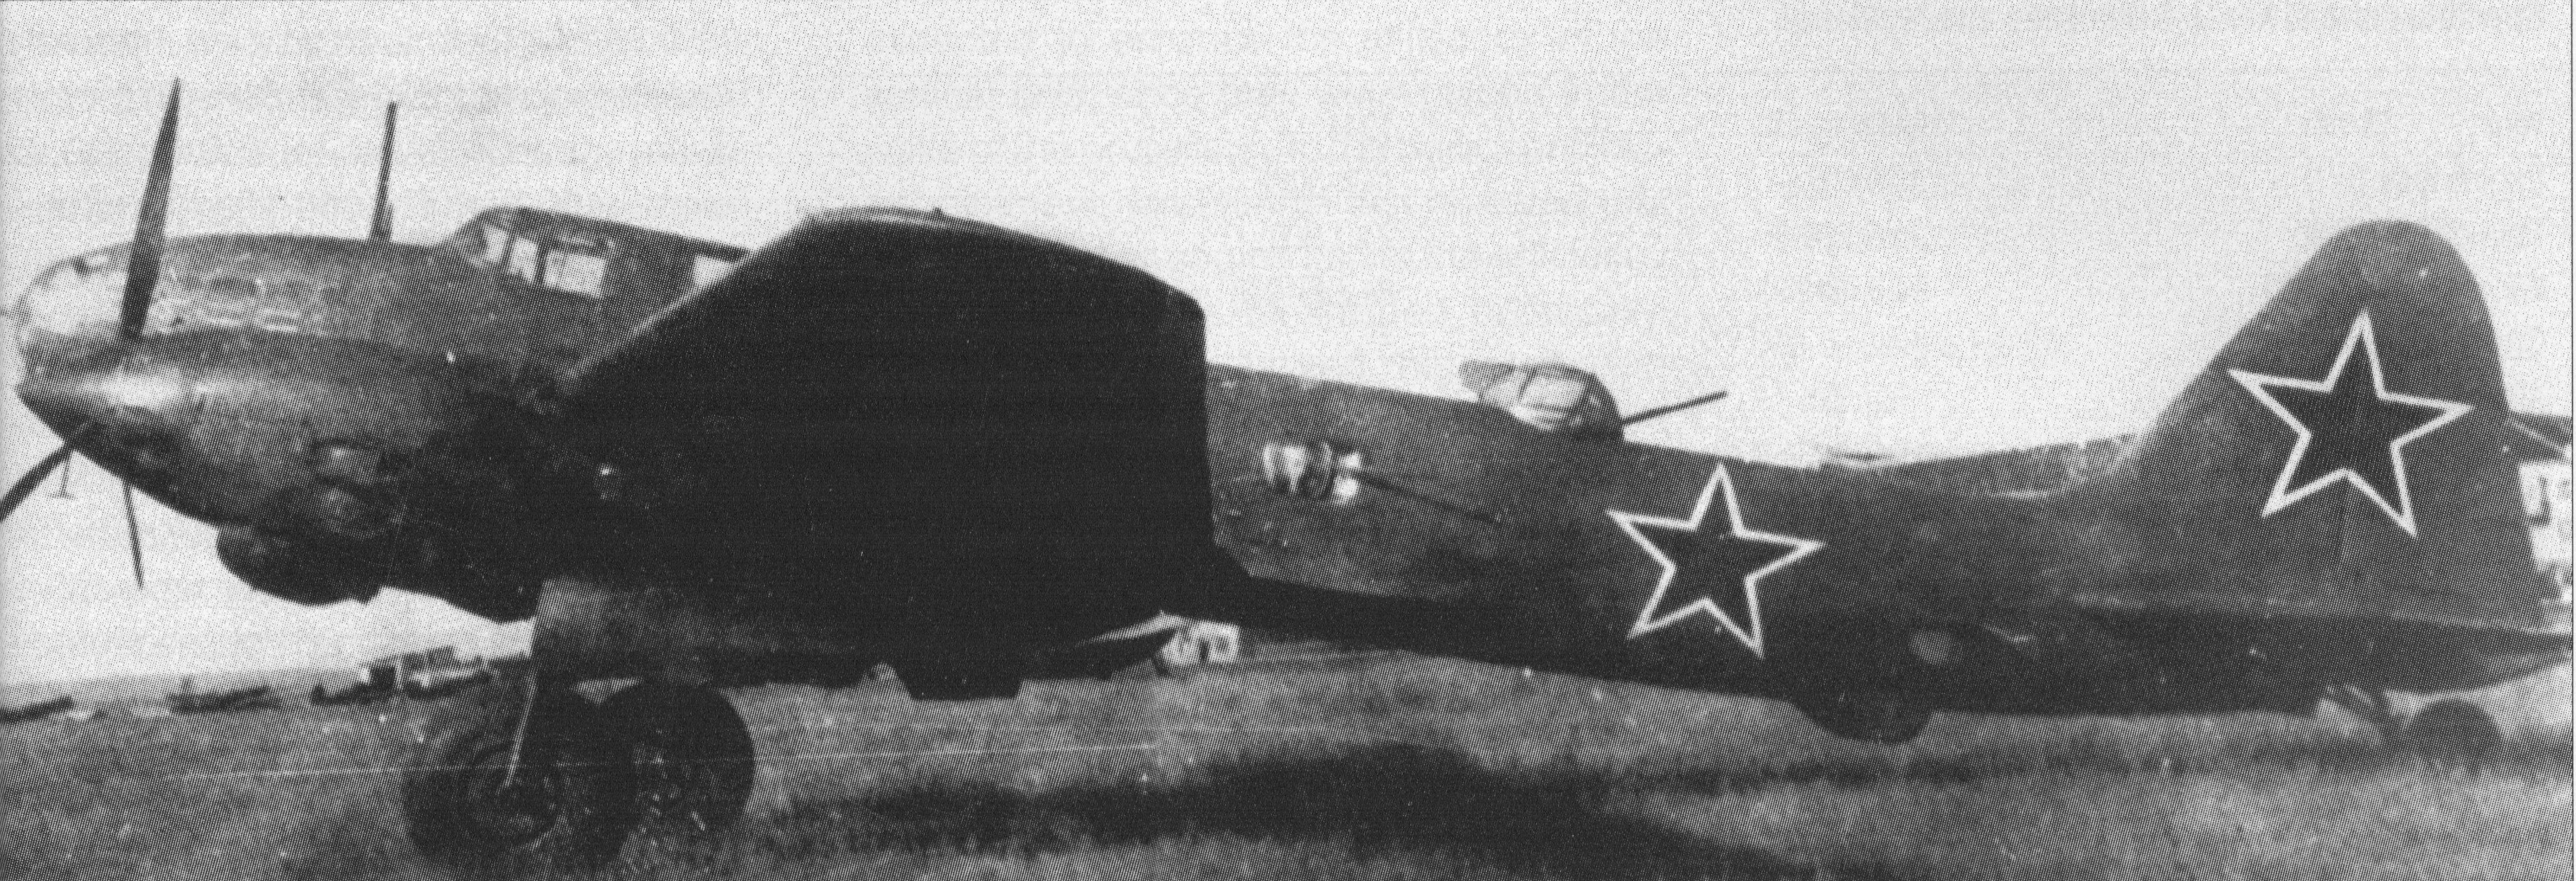 初代单翼机(1934前)